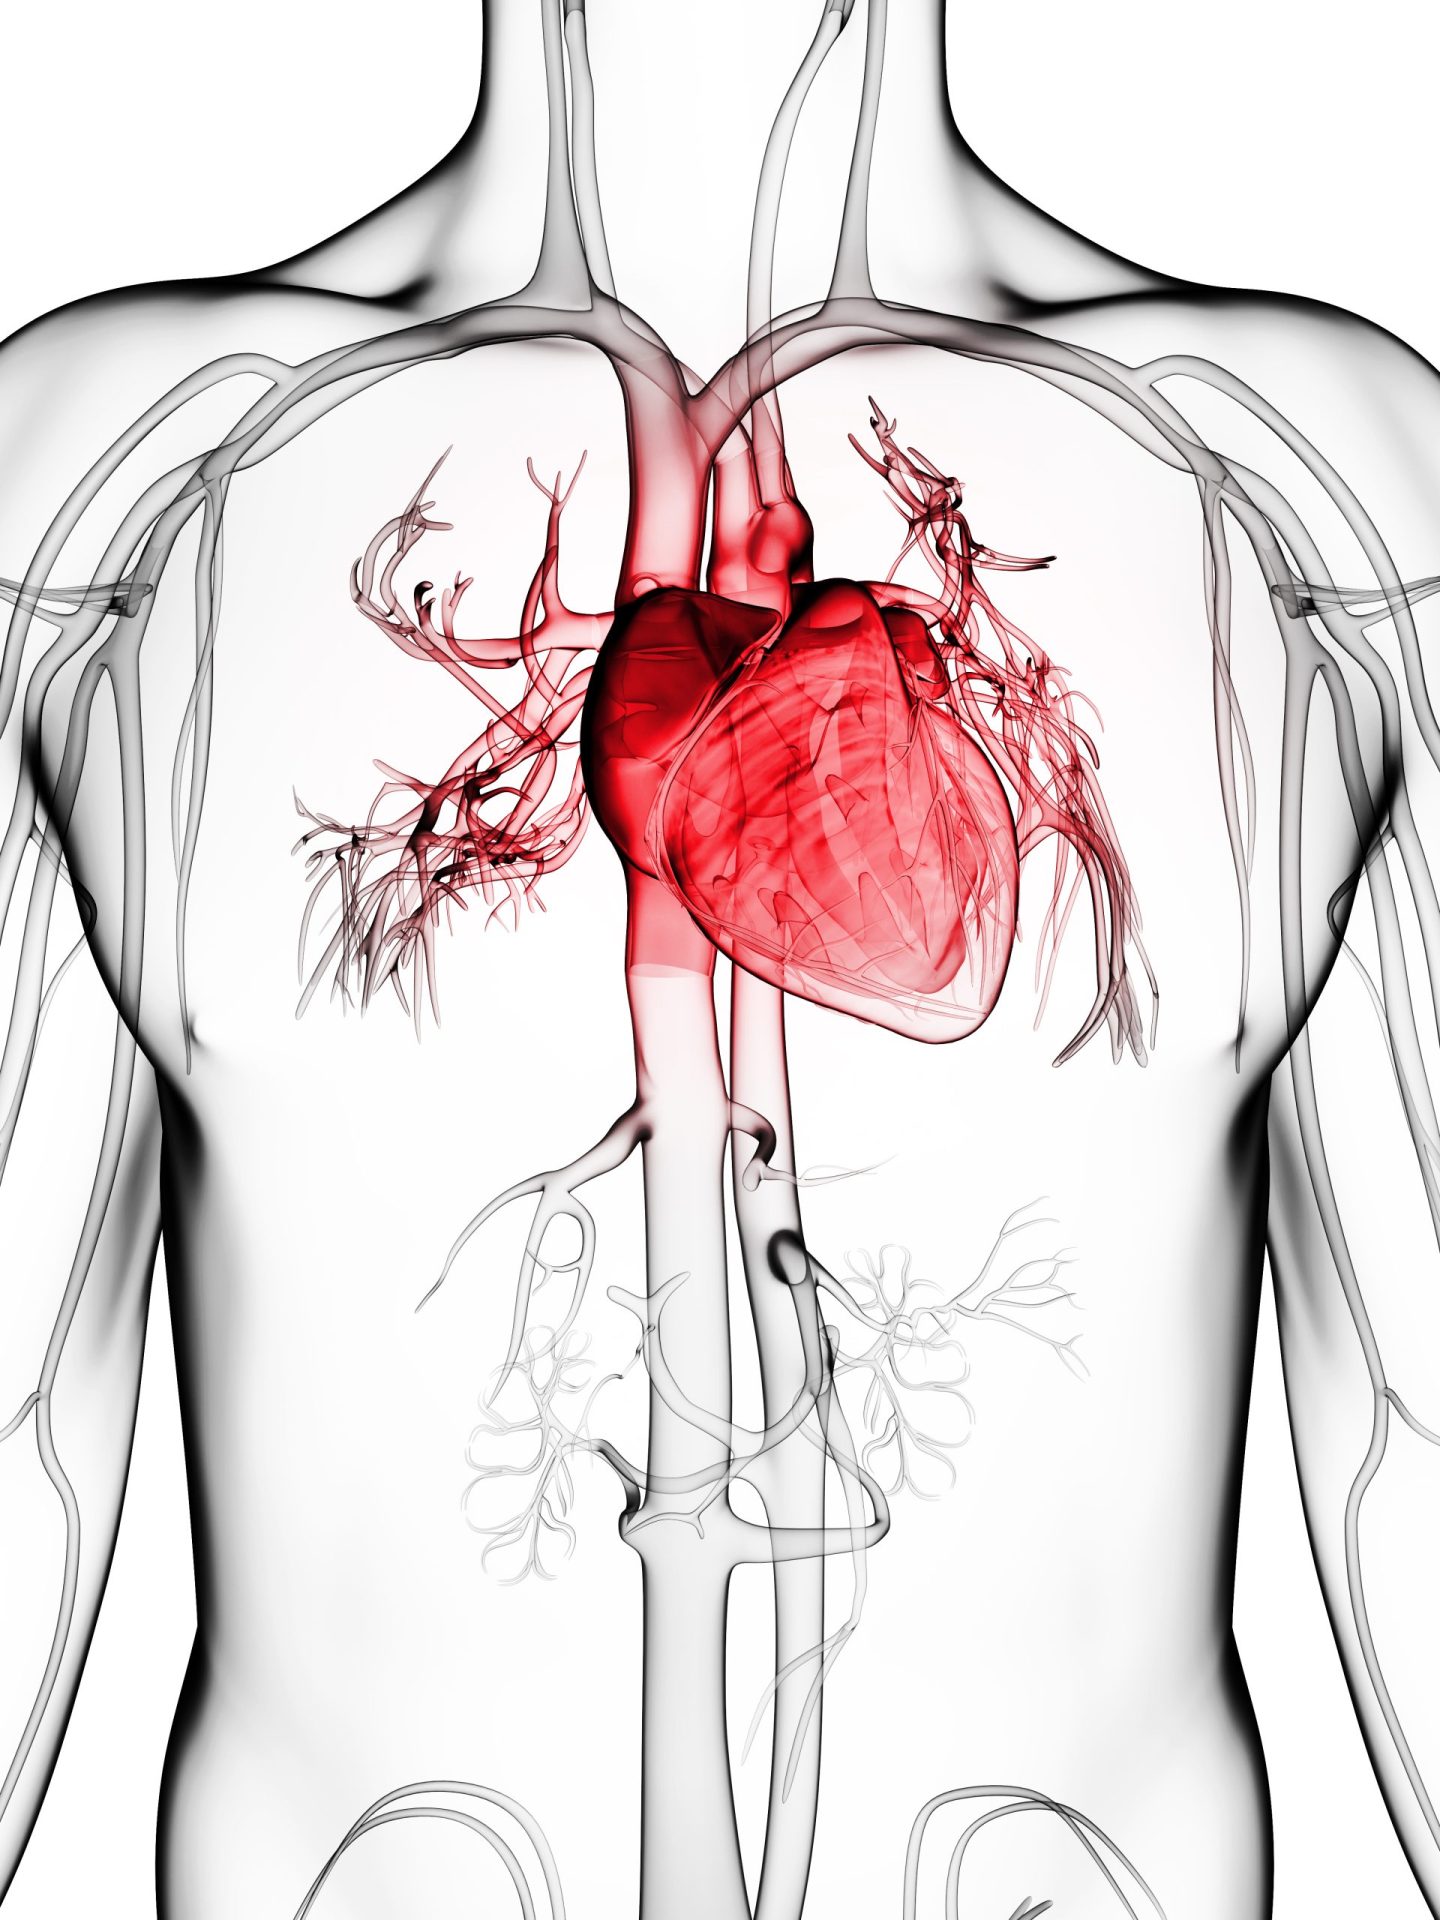 Hábito português ajuda a diminuir risco de ataque cardíaco